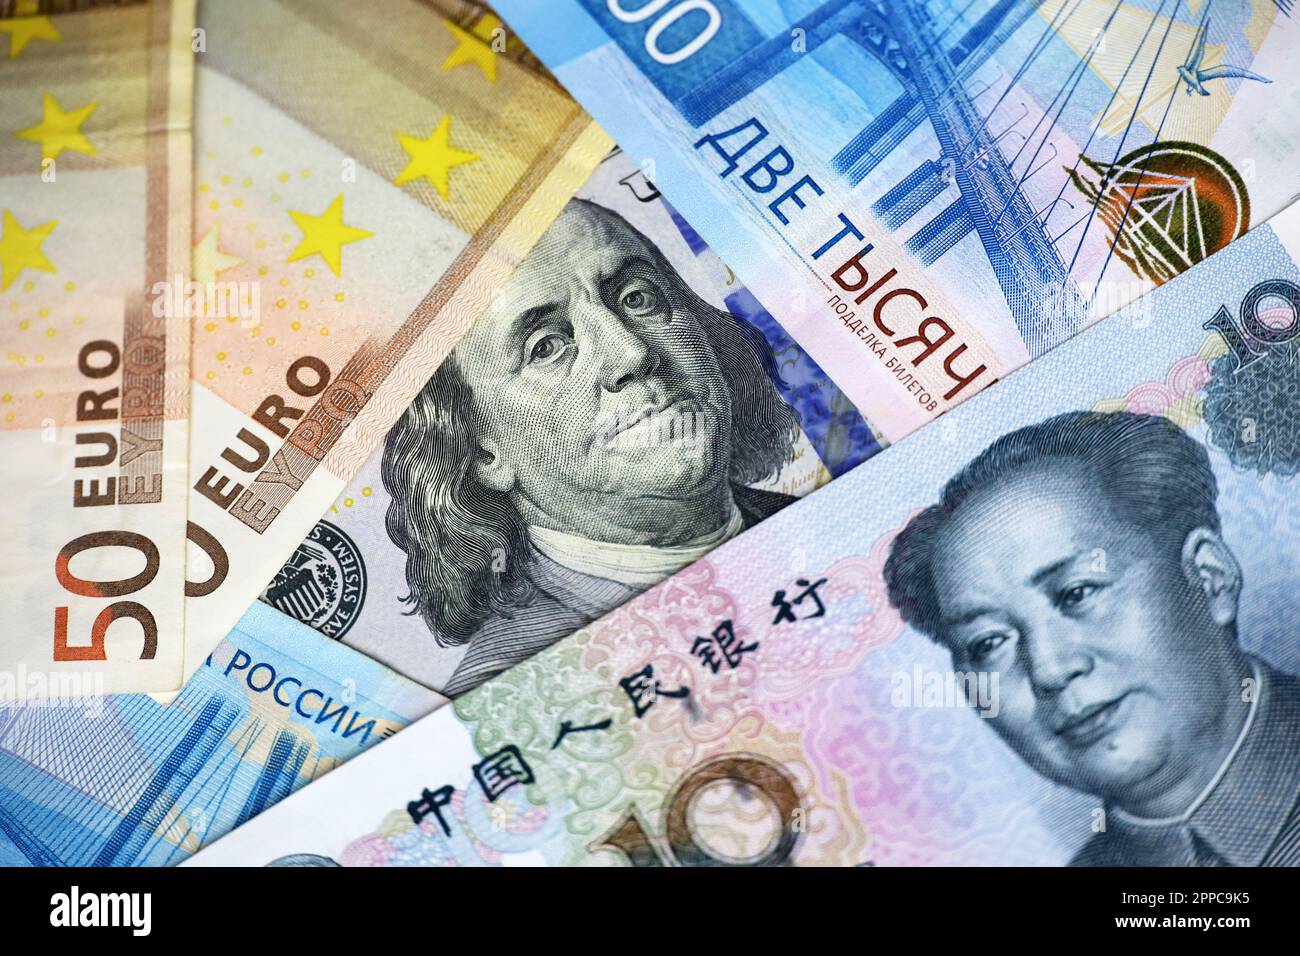 US-Dollar, chinesischer Yuan, Euro-Banknoten und russischer Rubel. Konzept des Handelskrieges zwischen China und den USA, amerikanischen und europäischen Sanktionen Stockfoto